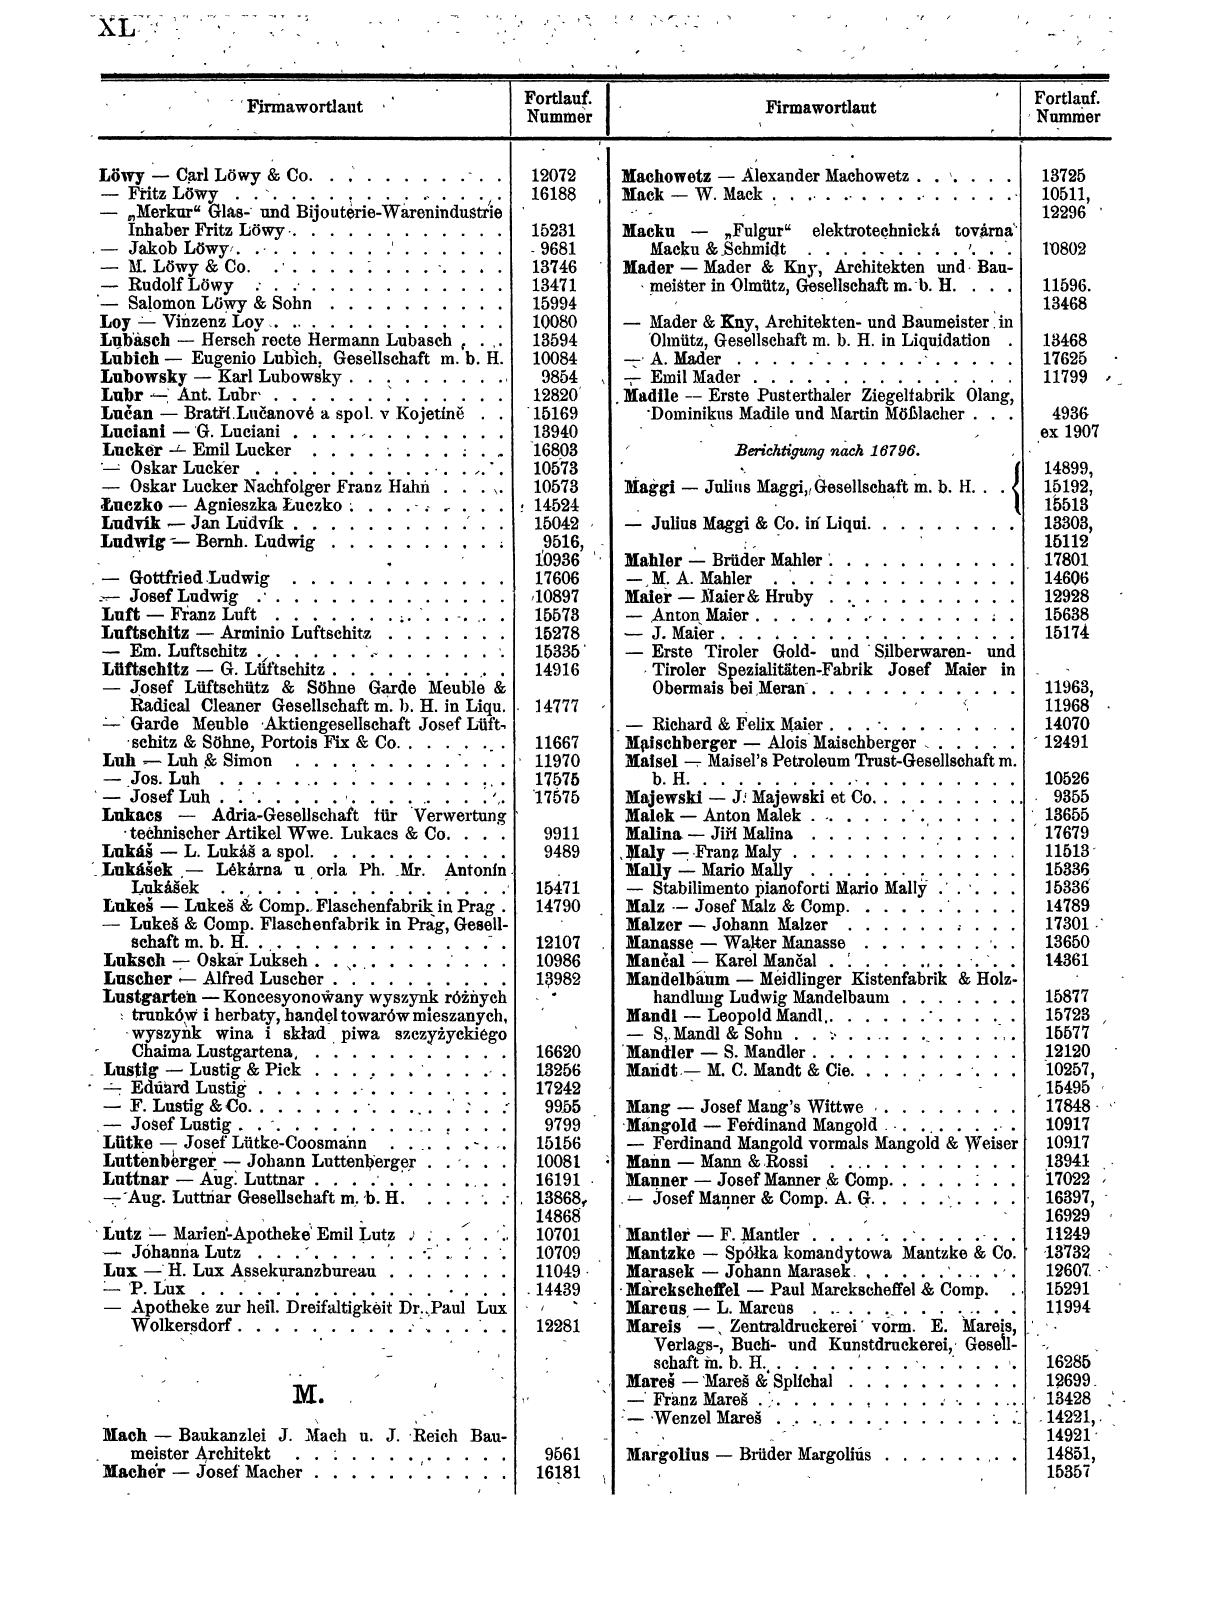 Zentralblatt für die Eintragungen in das Handelsregister 1913, Teil 2 - Seite 44